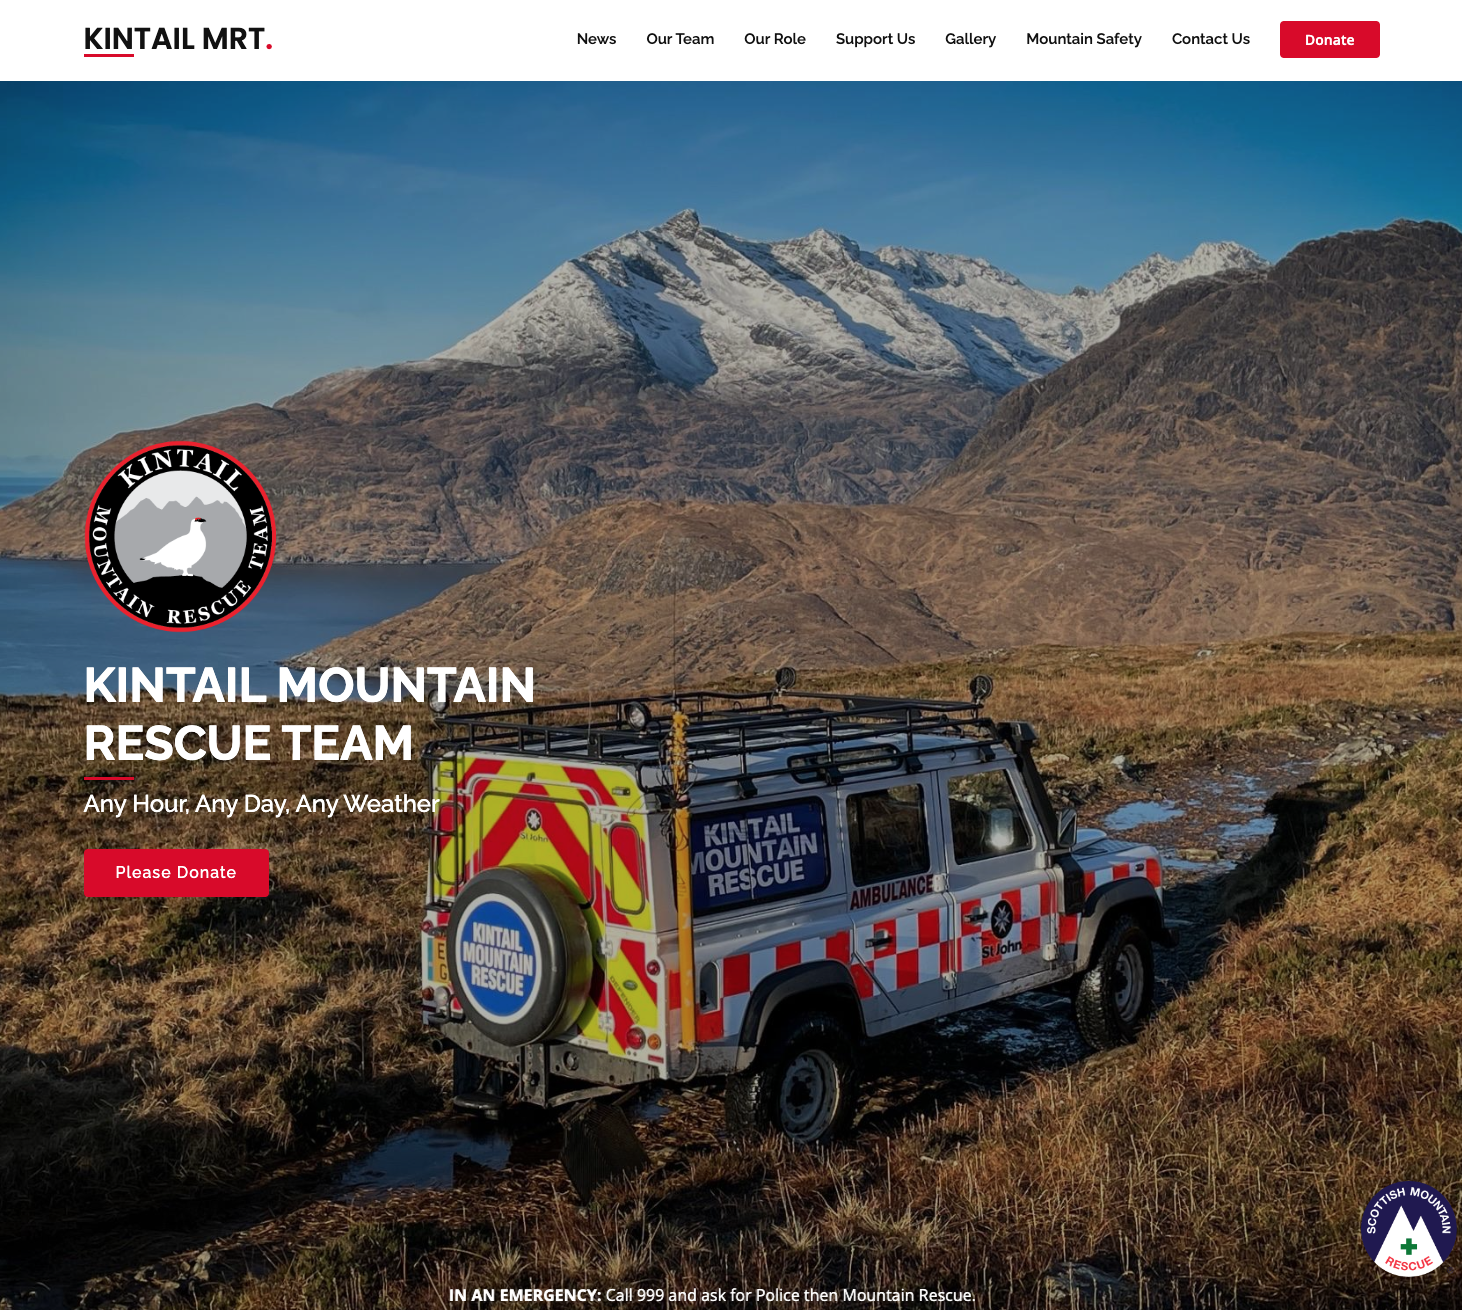 Kintail Mountain Rescue Team